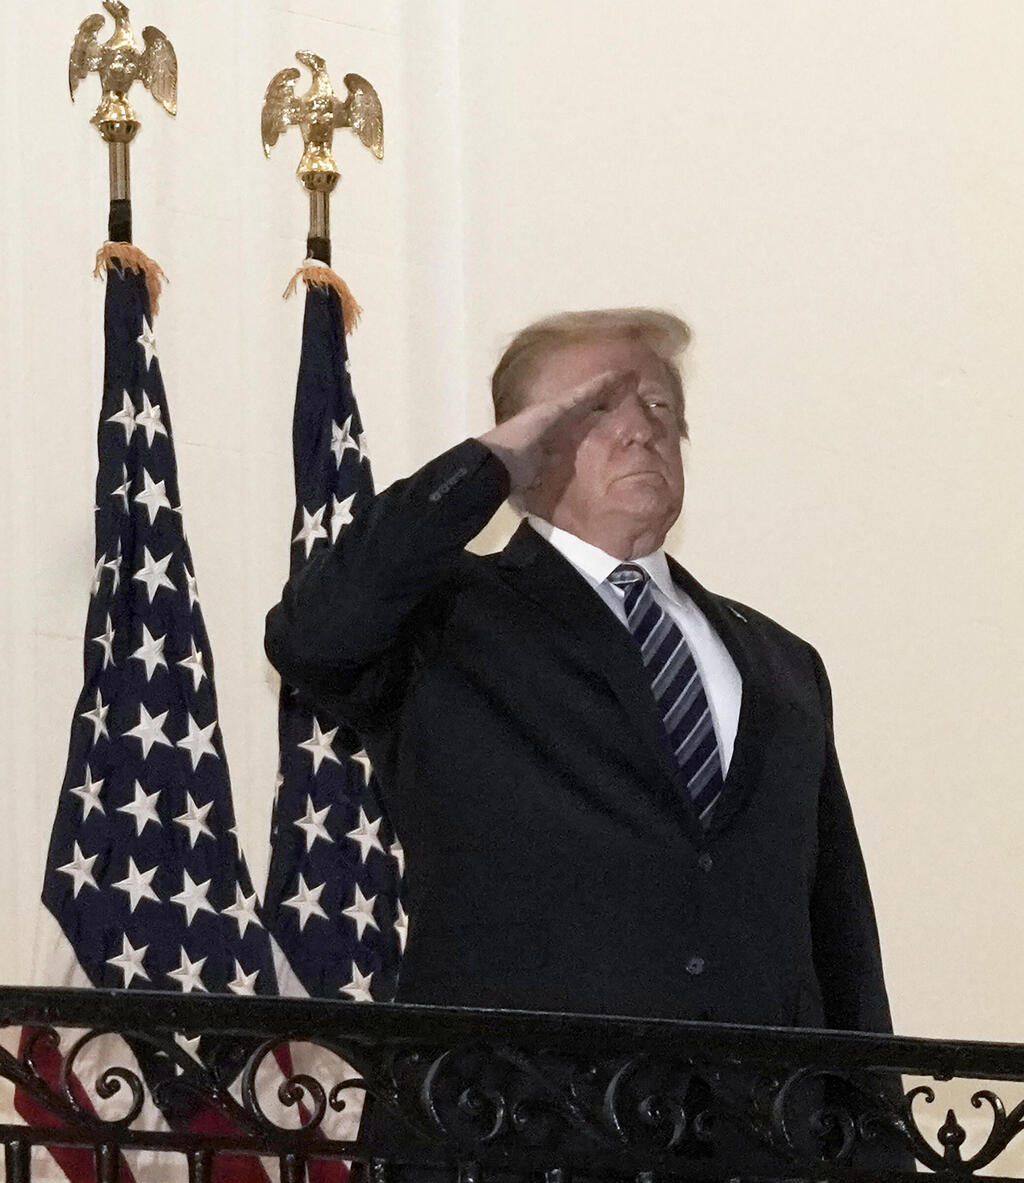 טראמפ ללא מסכה מצדיע על המרפסת בבית הלבן